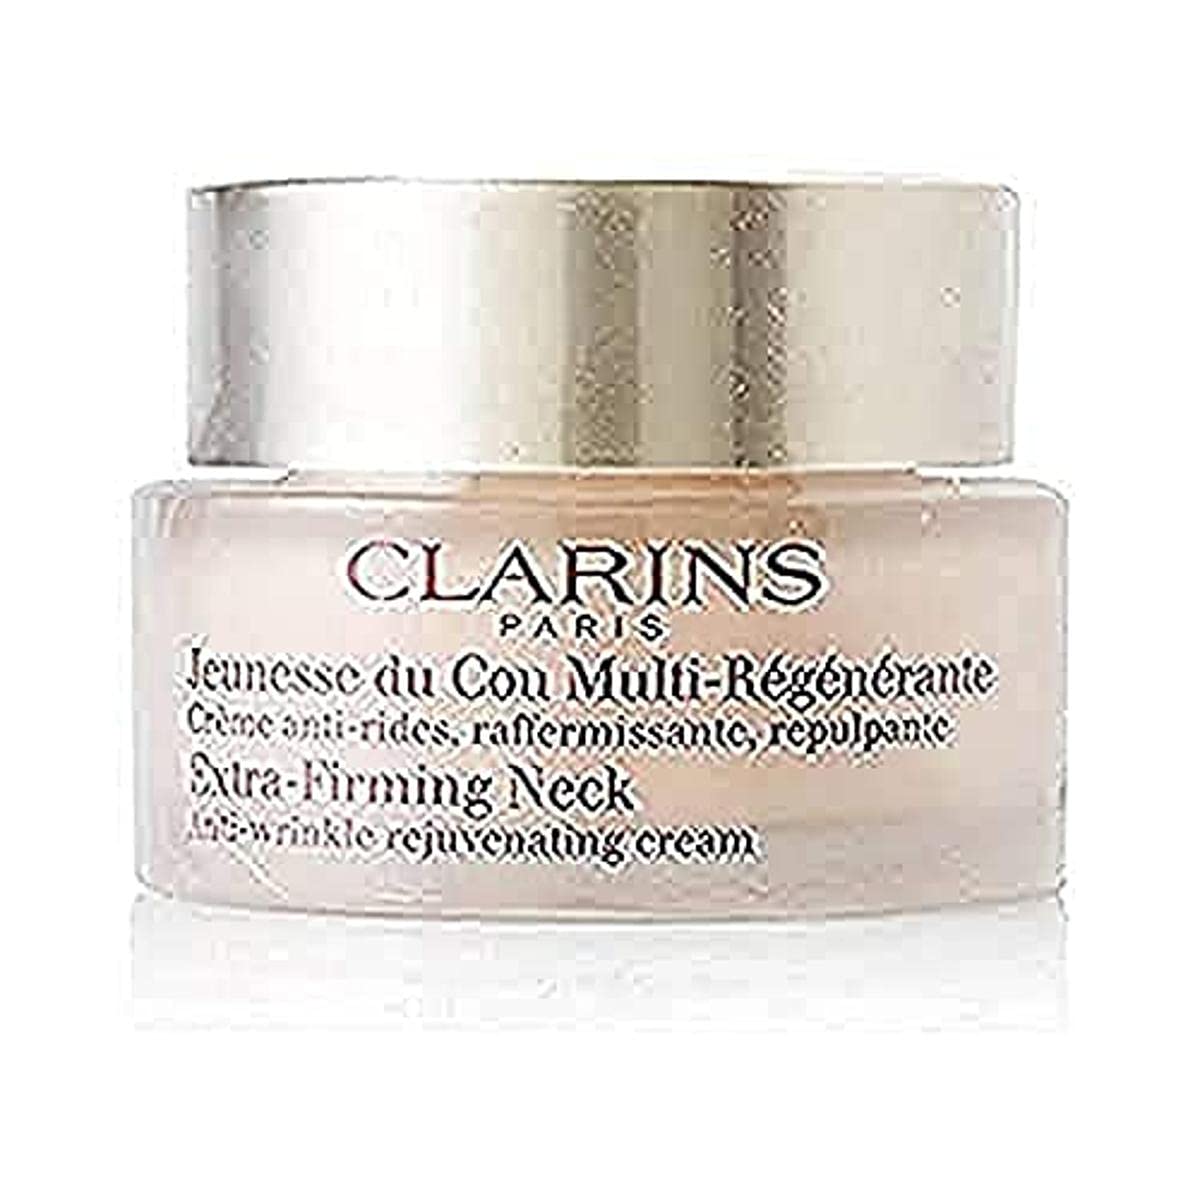 Clarins Body Cream Pack of 1 (1 x 50 ml)